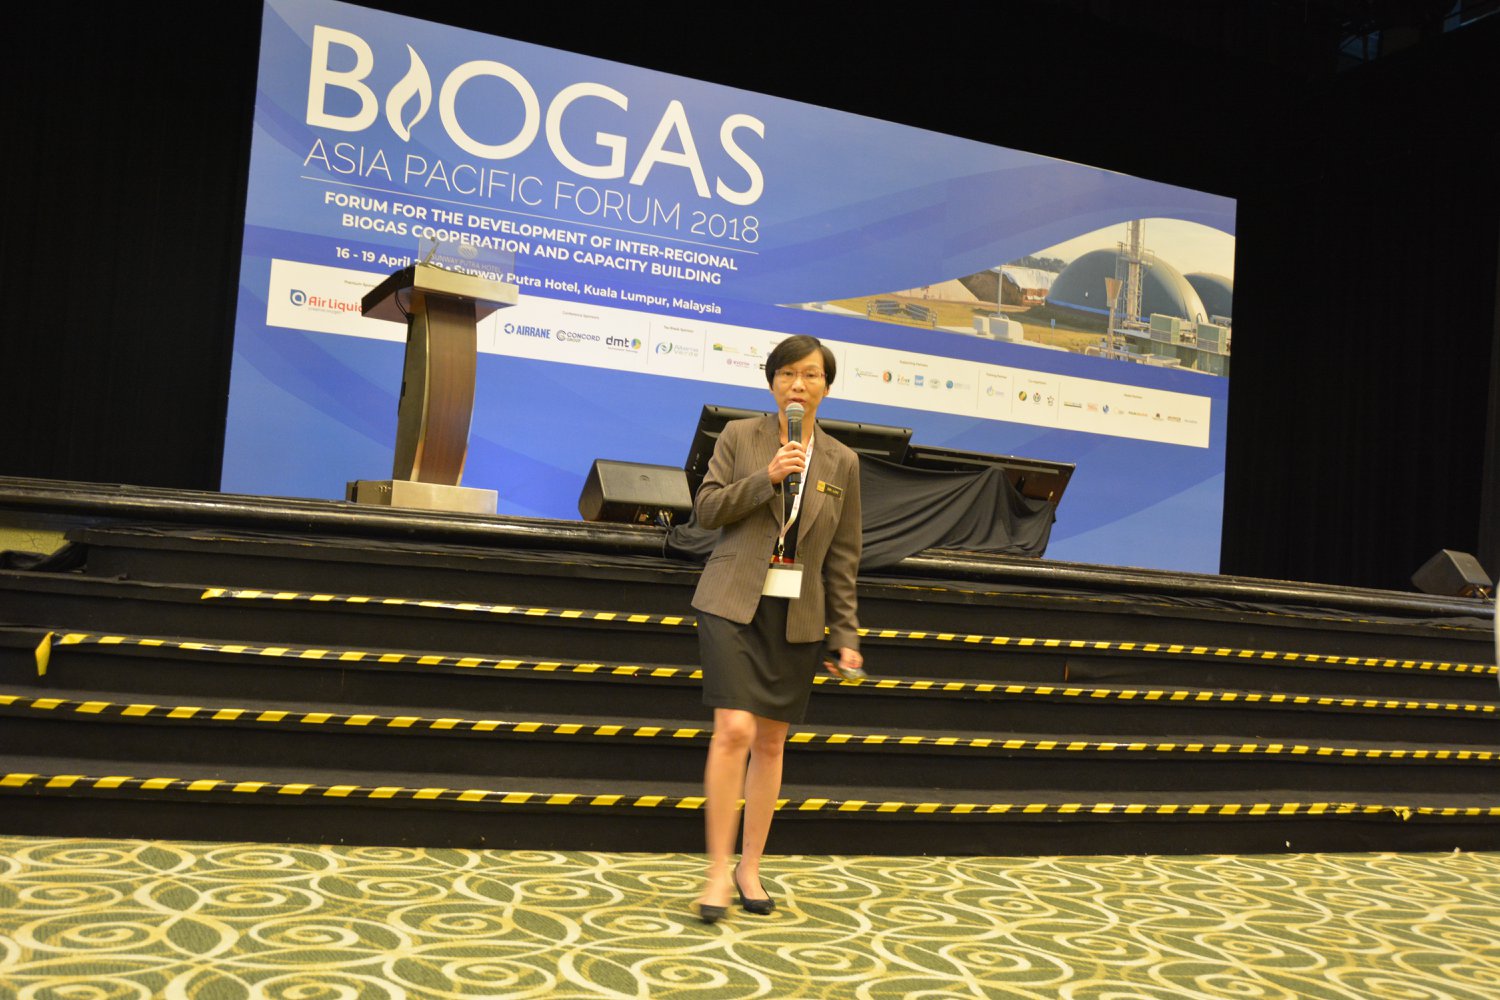 Asia Pacific Biogas Forum 2018